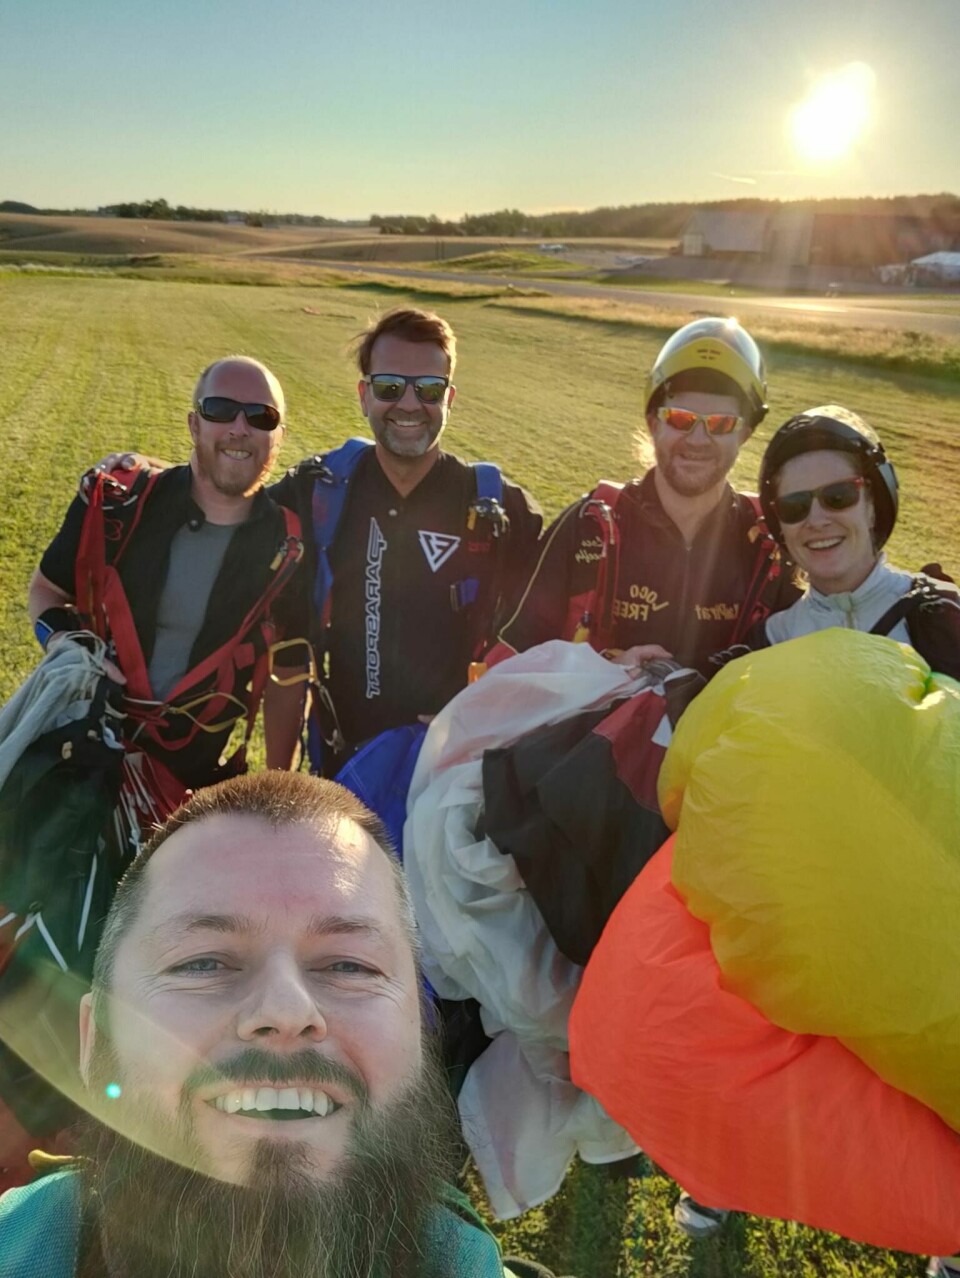 Blide hoppere etter sunsetload hos Skydive Viken. F.v. Amund Sæter, Ronny Haugen (foran), Lasse Skjennem, Kai Sellevold og Grete Kirsti Viste.